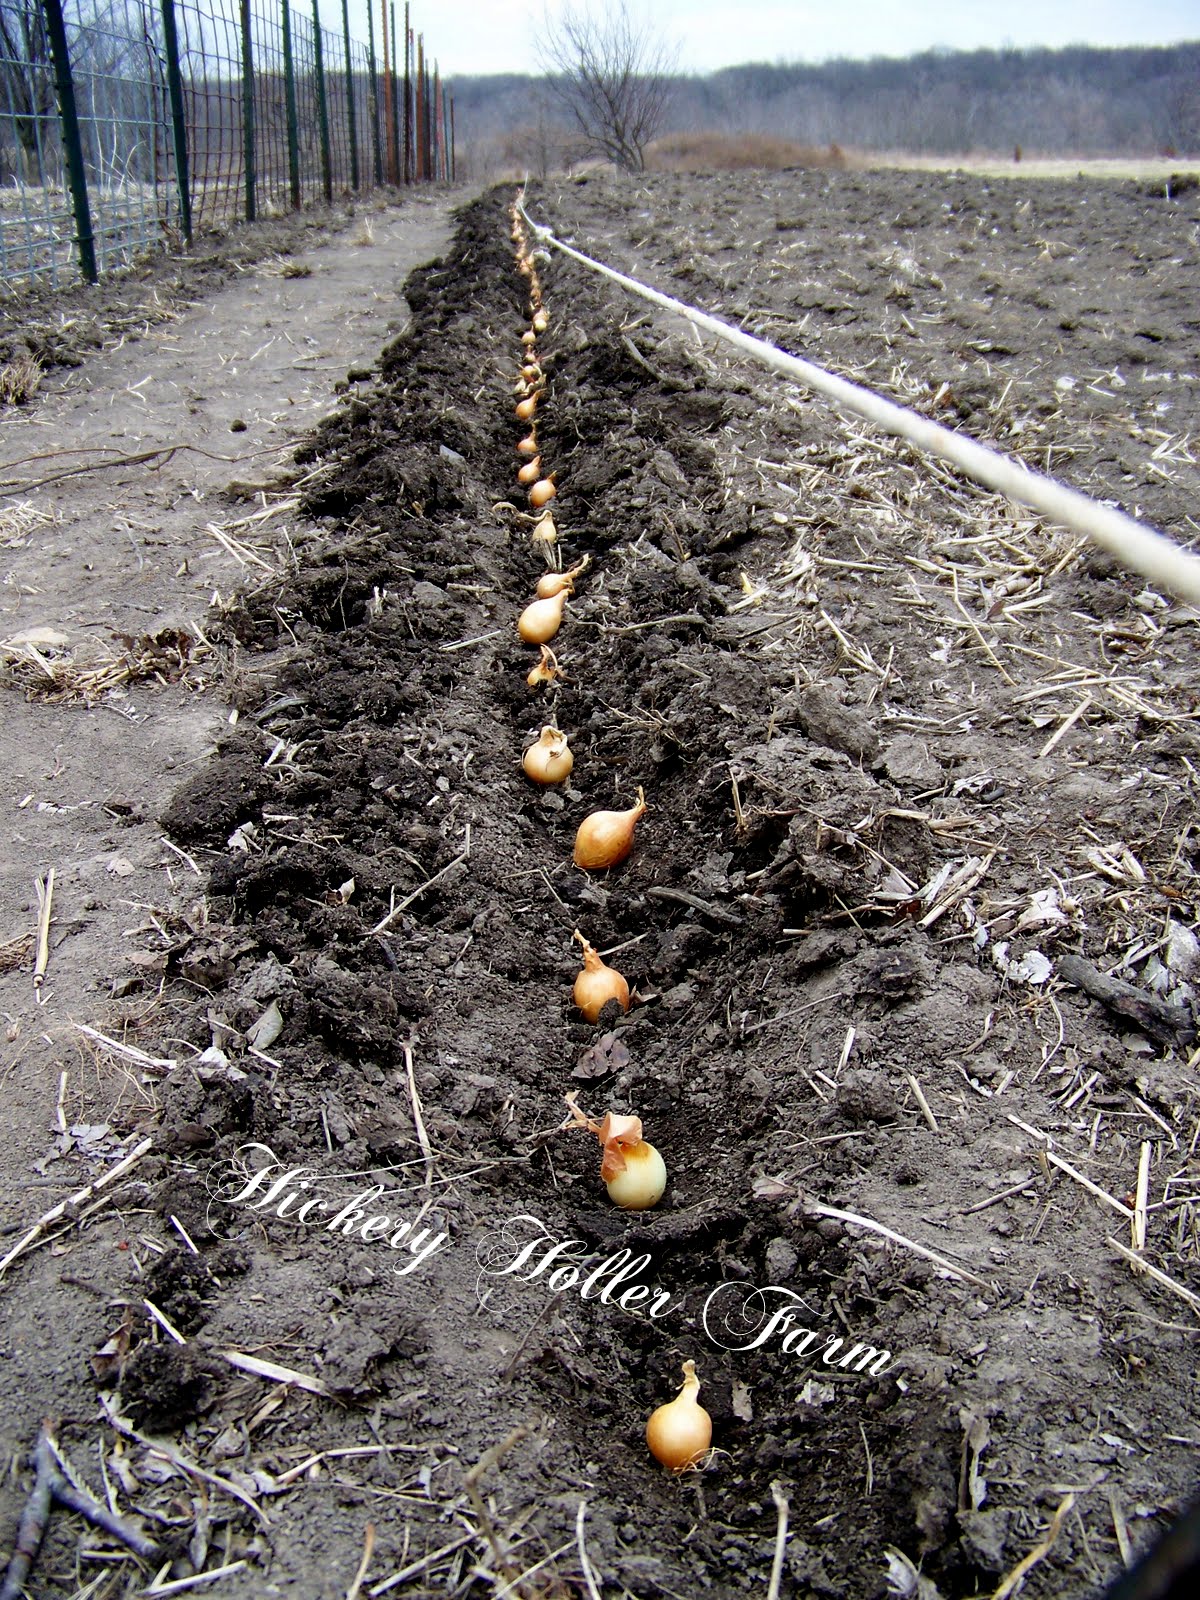 How do you plant onion sets?